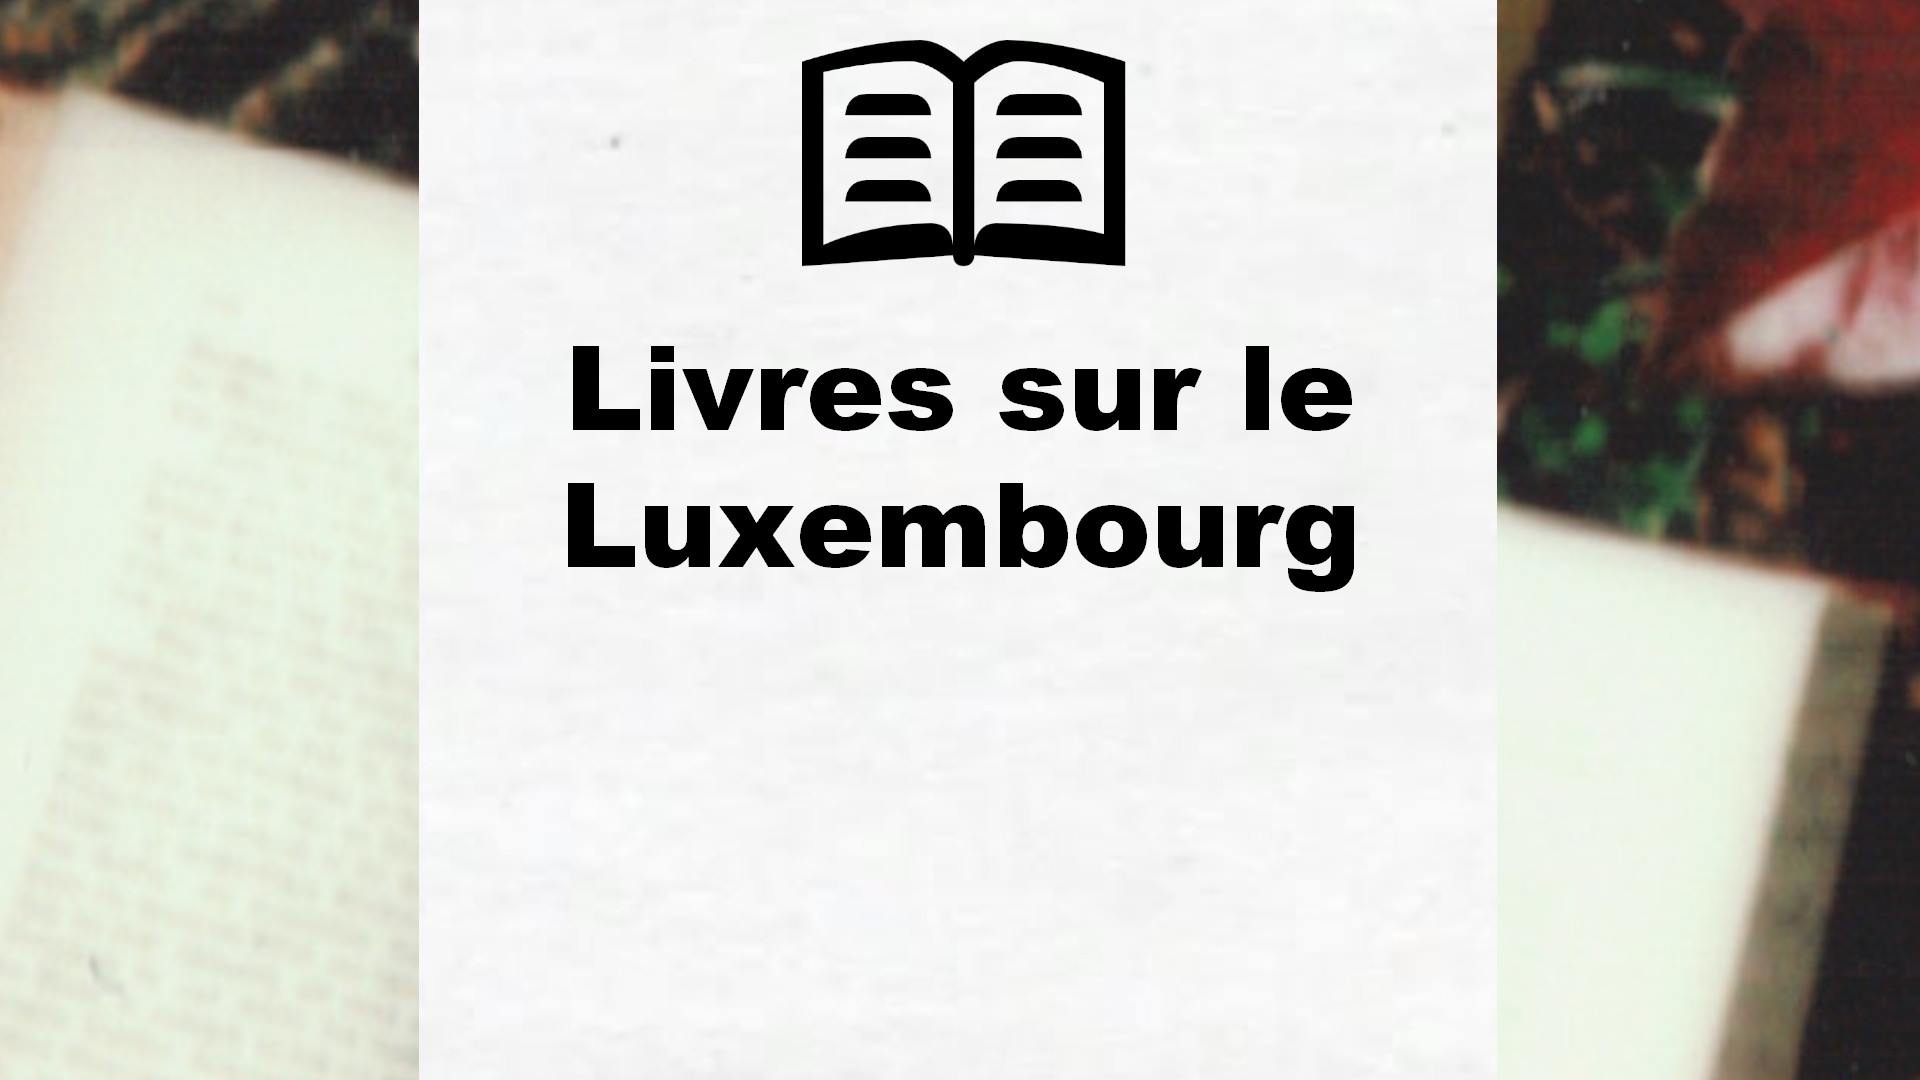 Livres sur le Luxembourg